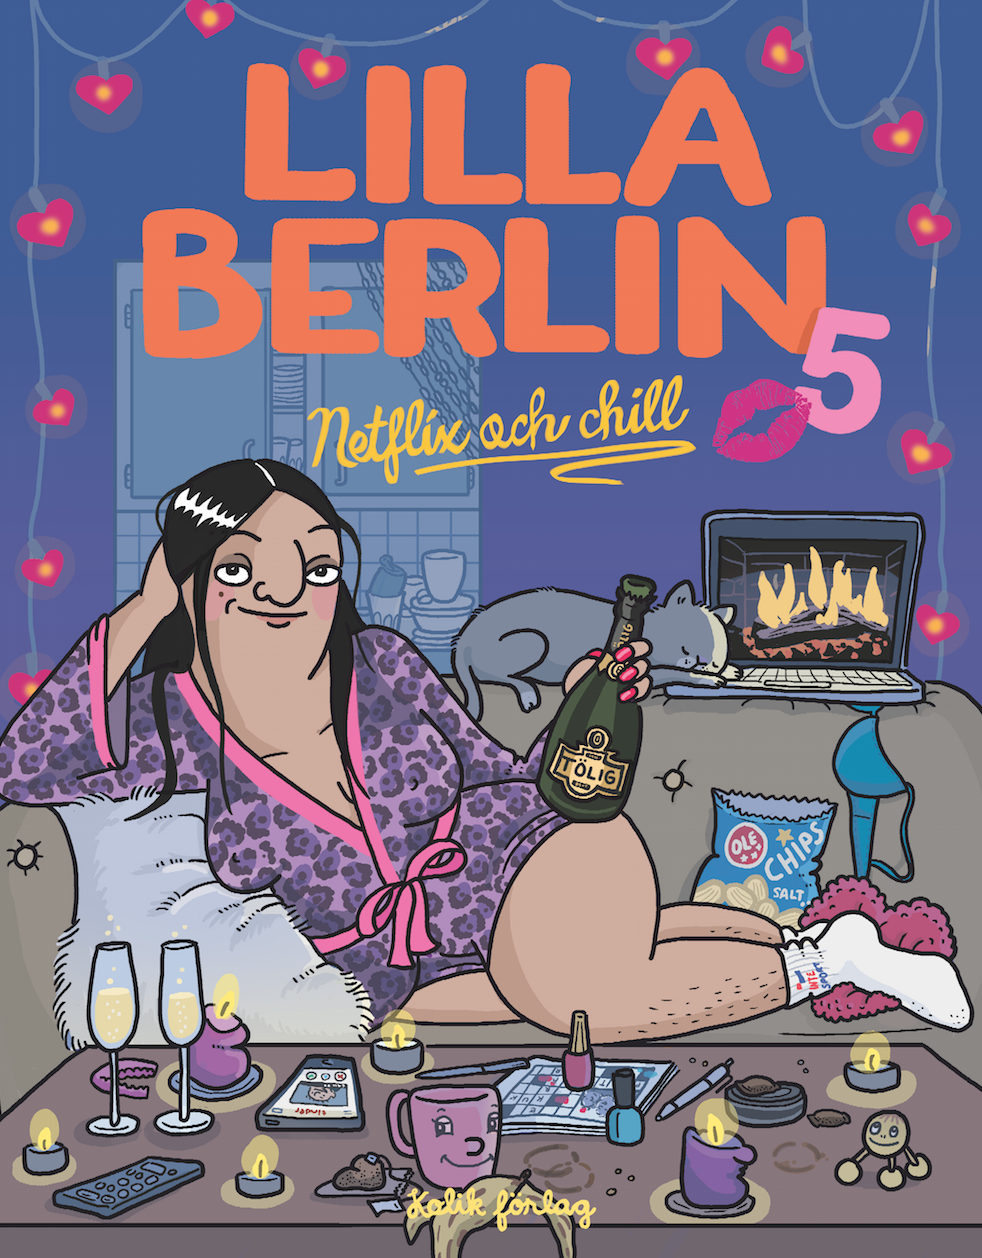 Lilla Berlin 5 - Netflix och chill (utkommer sep 2016)